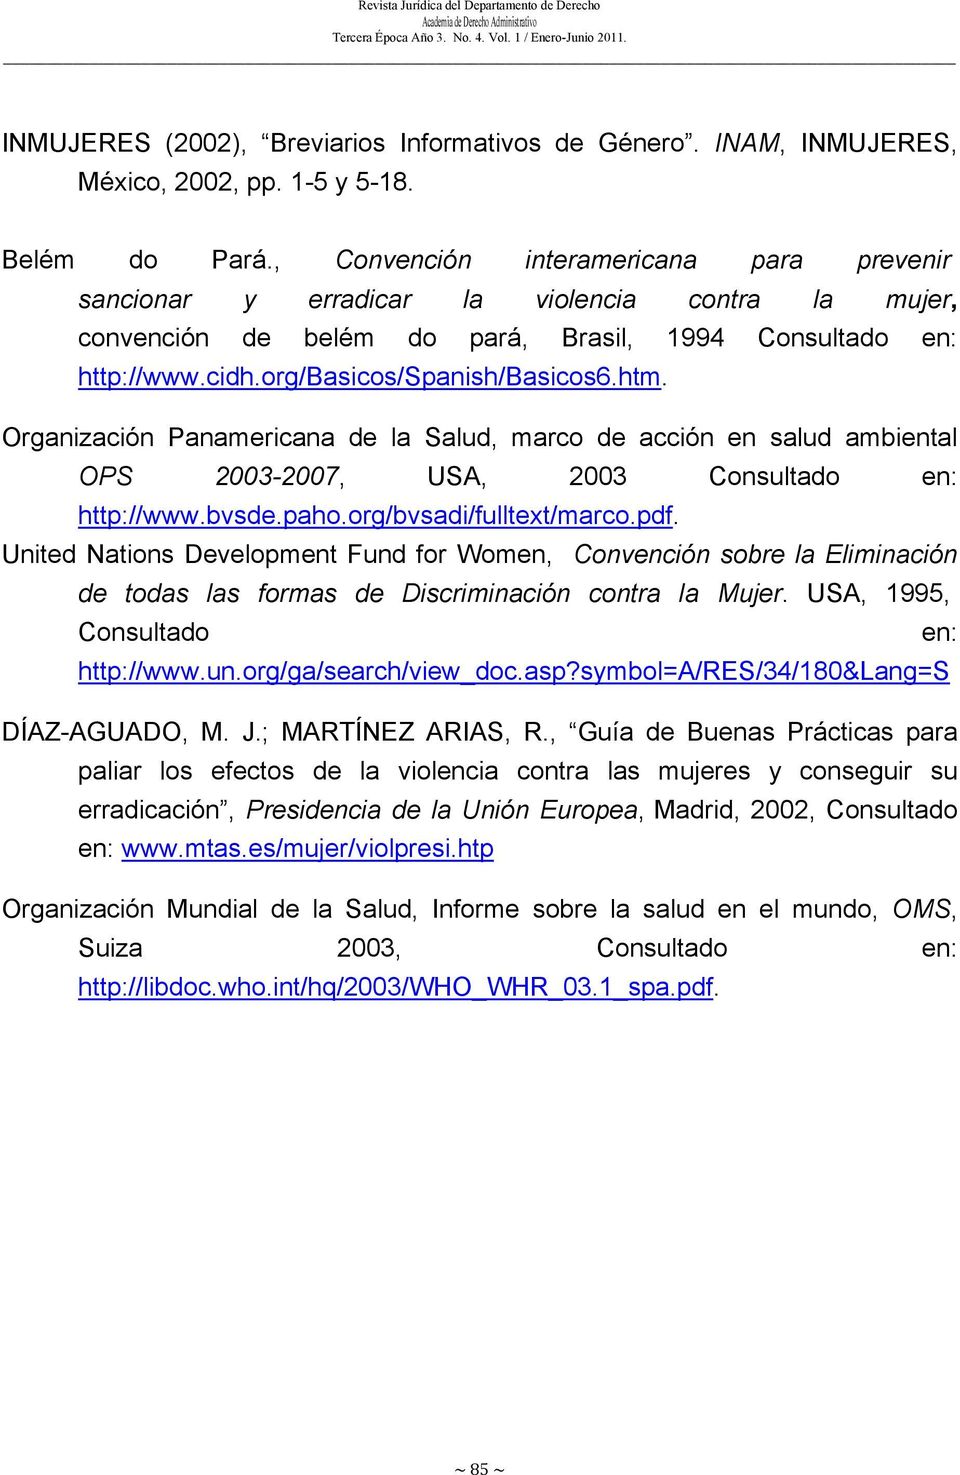 Organización Panamericana de la Salud, marco de acción en salud ambiental OPS 2003-2007, USA, 2003 Consultado en: http://www.bvsde.paho.org/bvsadi/fulltext/marco.pdf.